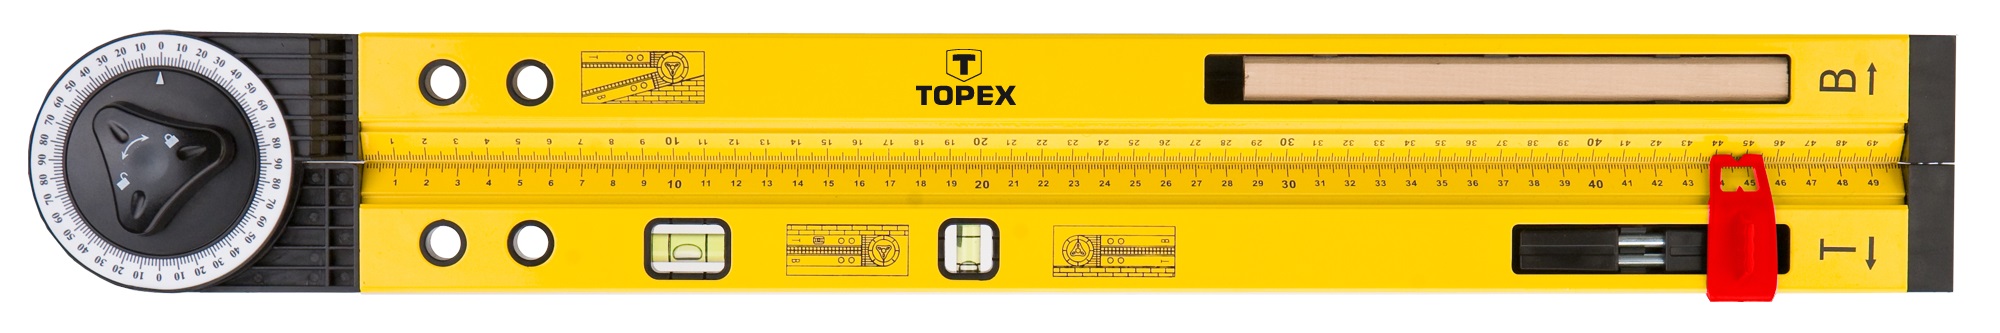 Topex 30C321